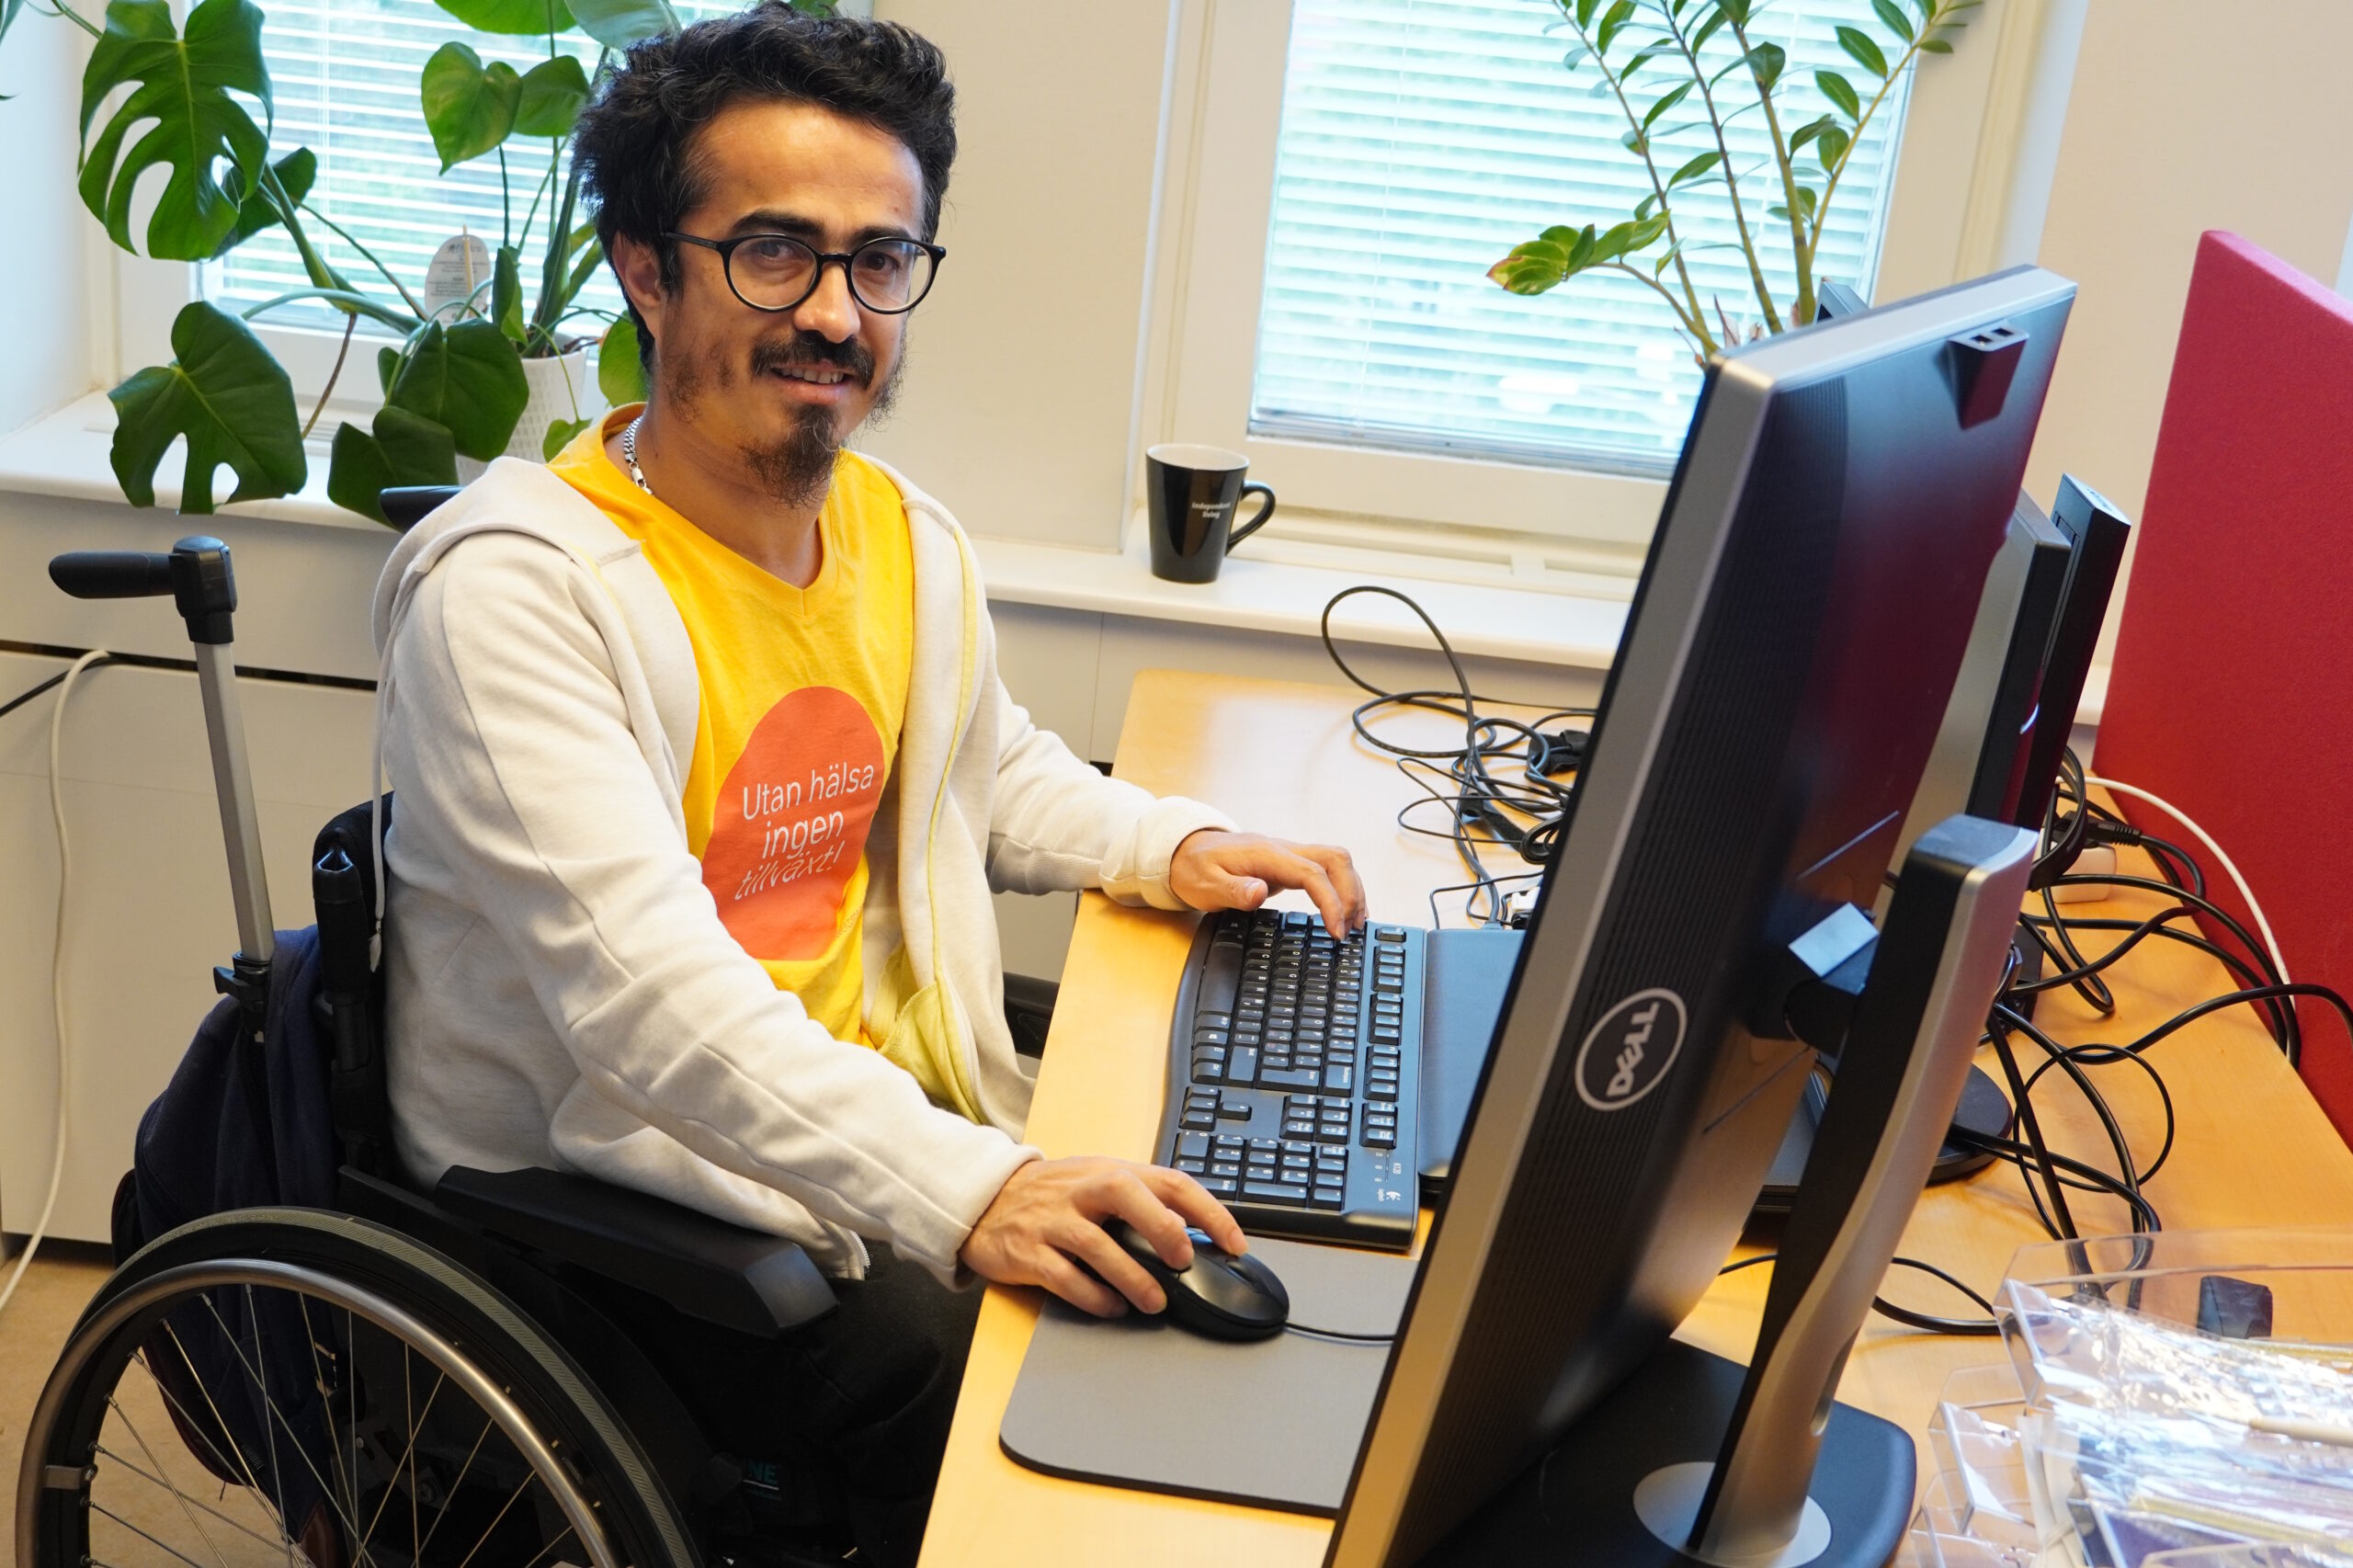 Ashraf sitter och jobbar bakom ett par stora skärmar på kontoret i Farsta. Han tittar upp och ler försiktigt.